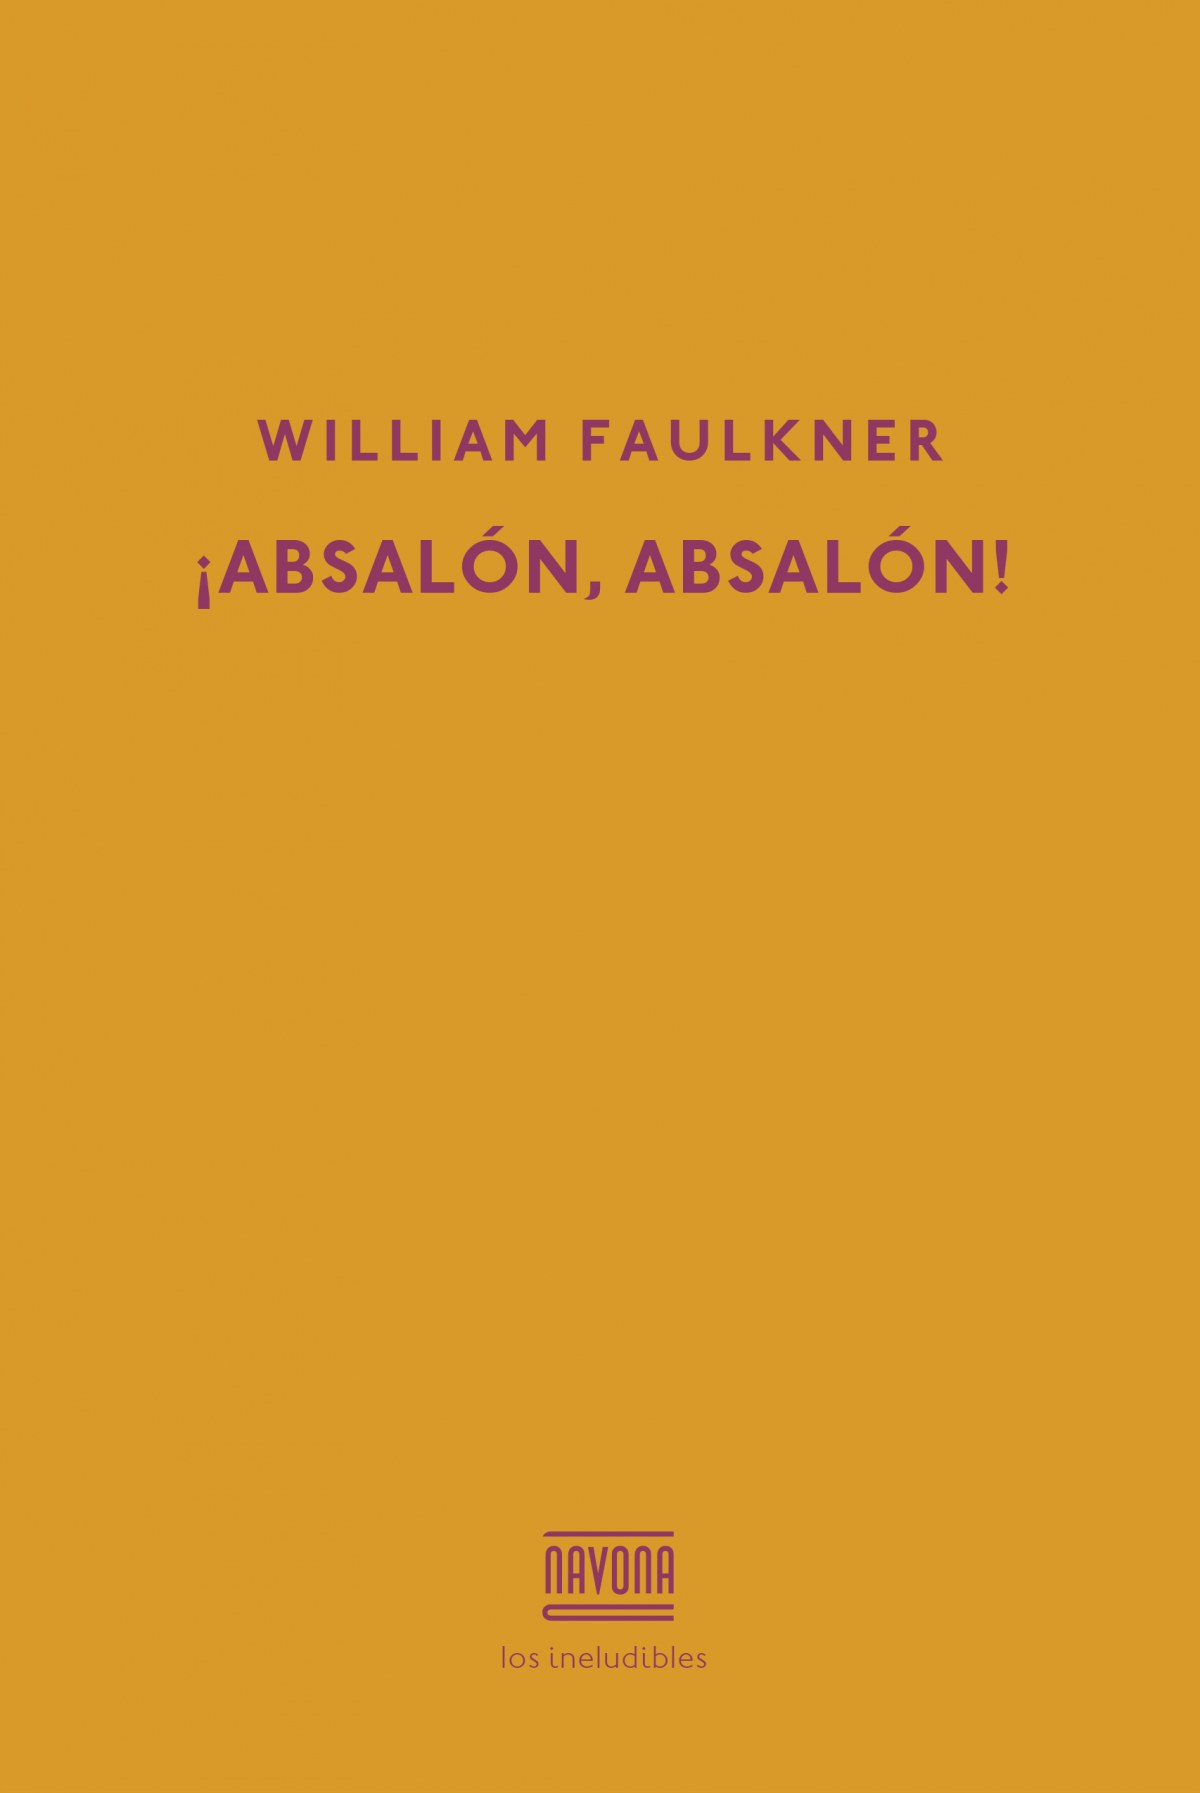 ¡ABSALON, ABSALON! - Faulkner, William